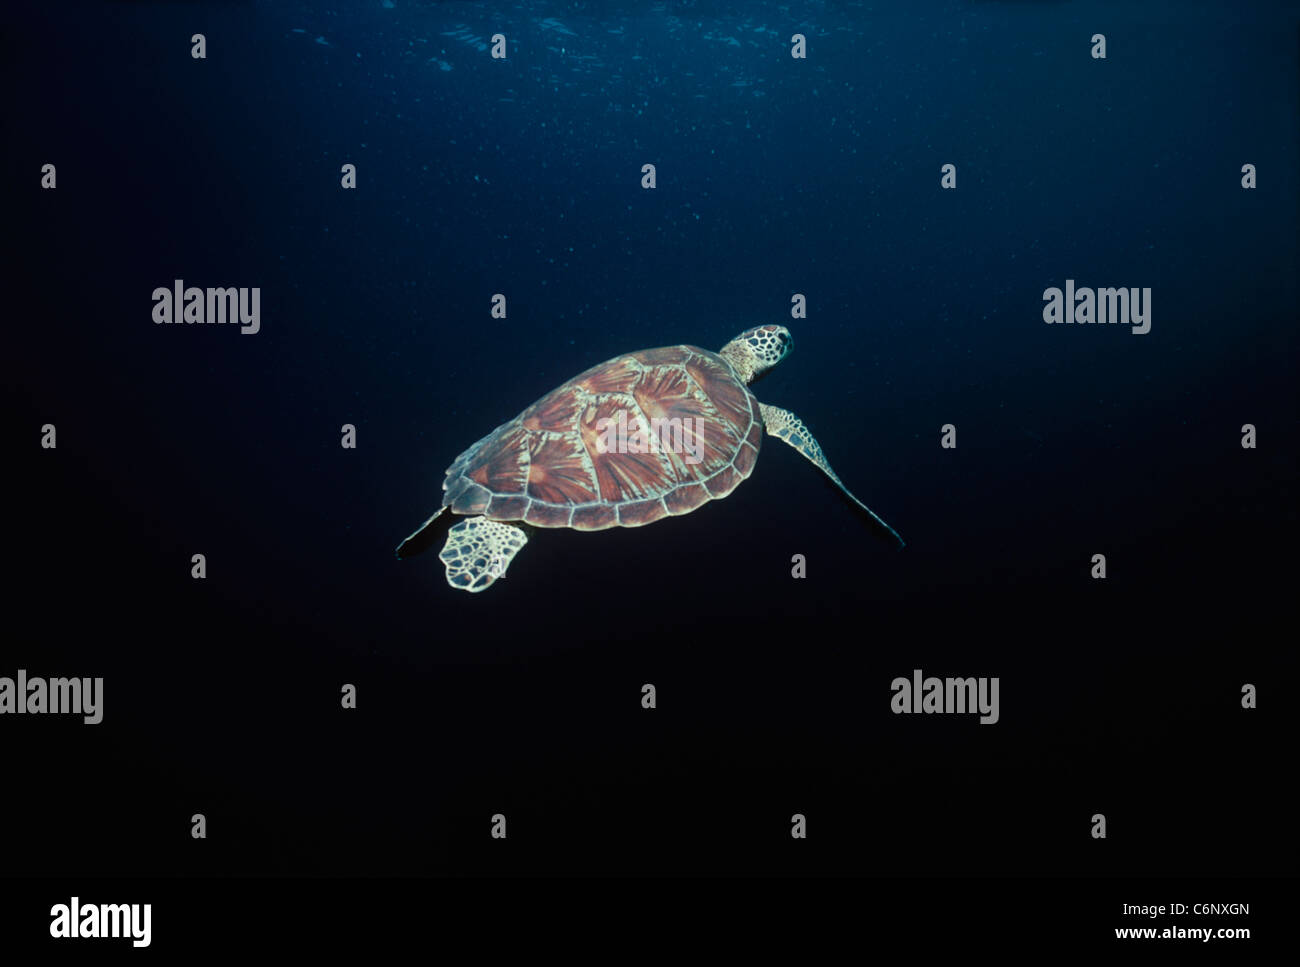 Tartaruga embricata (Eretmochelys imbricata) nuoto in mare aperto. Sipadan Island, Borneo, sul Mare della Cina del Sud Foto Stock